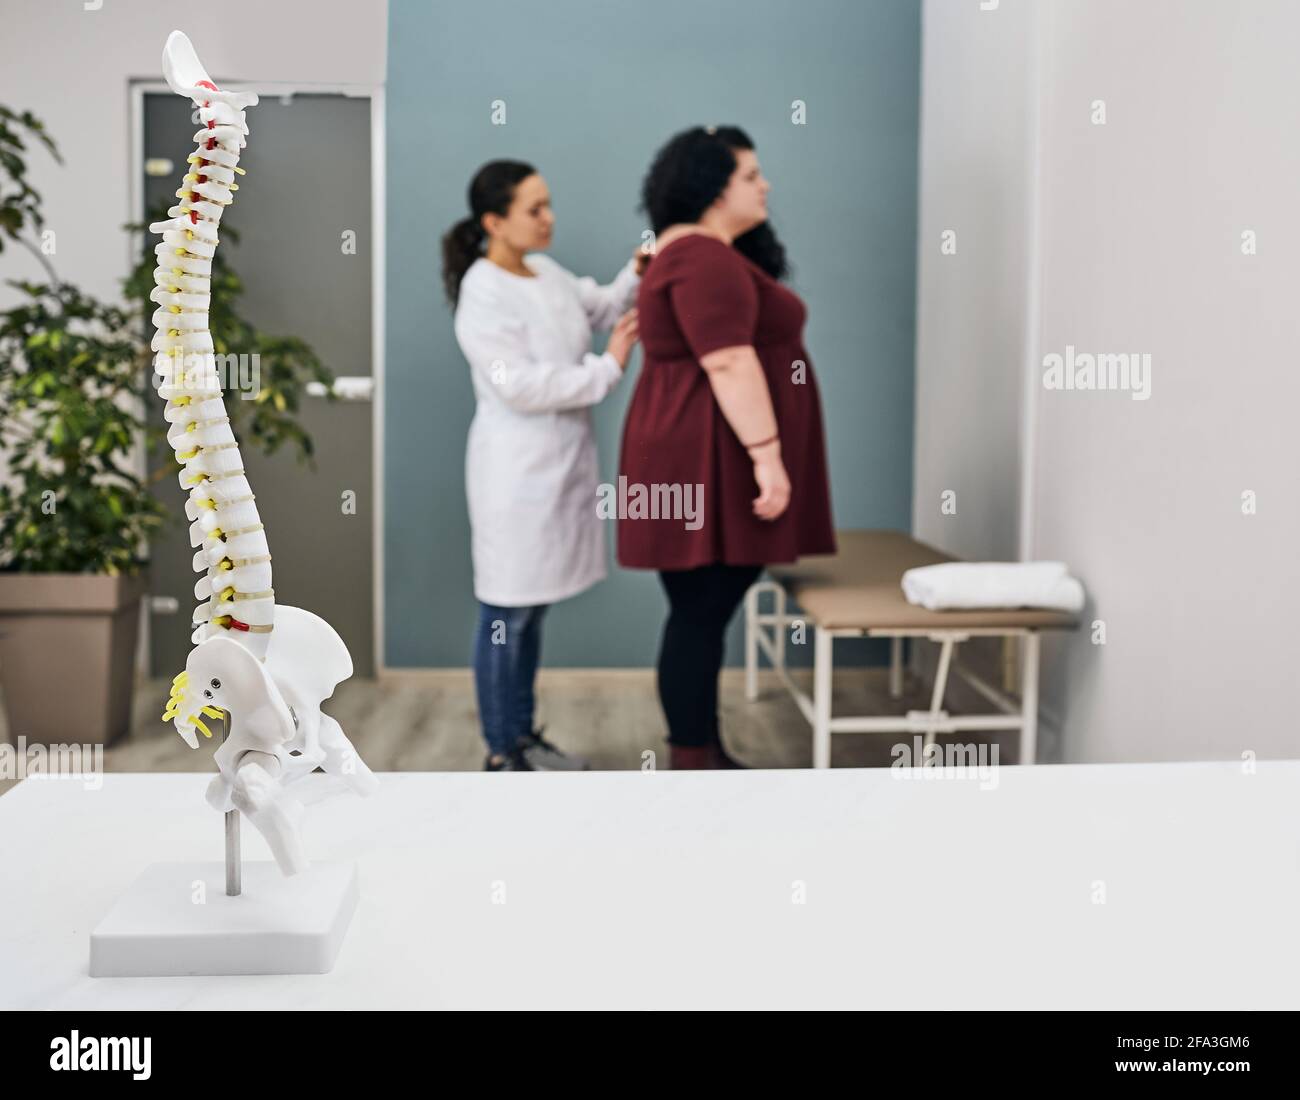 Protrusione ed ernia del disco nelle persone obese. il medico esamina la colonna vertebrale di una donna in sovrappeso Foto Stock